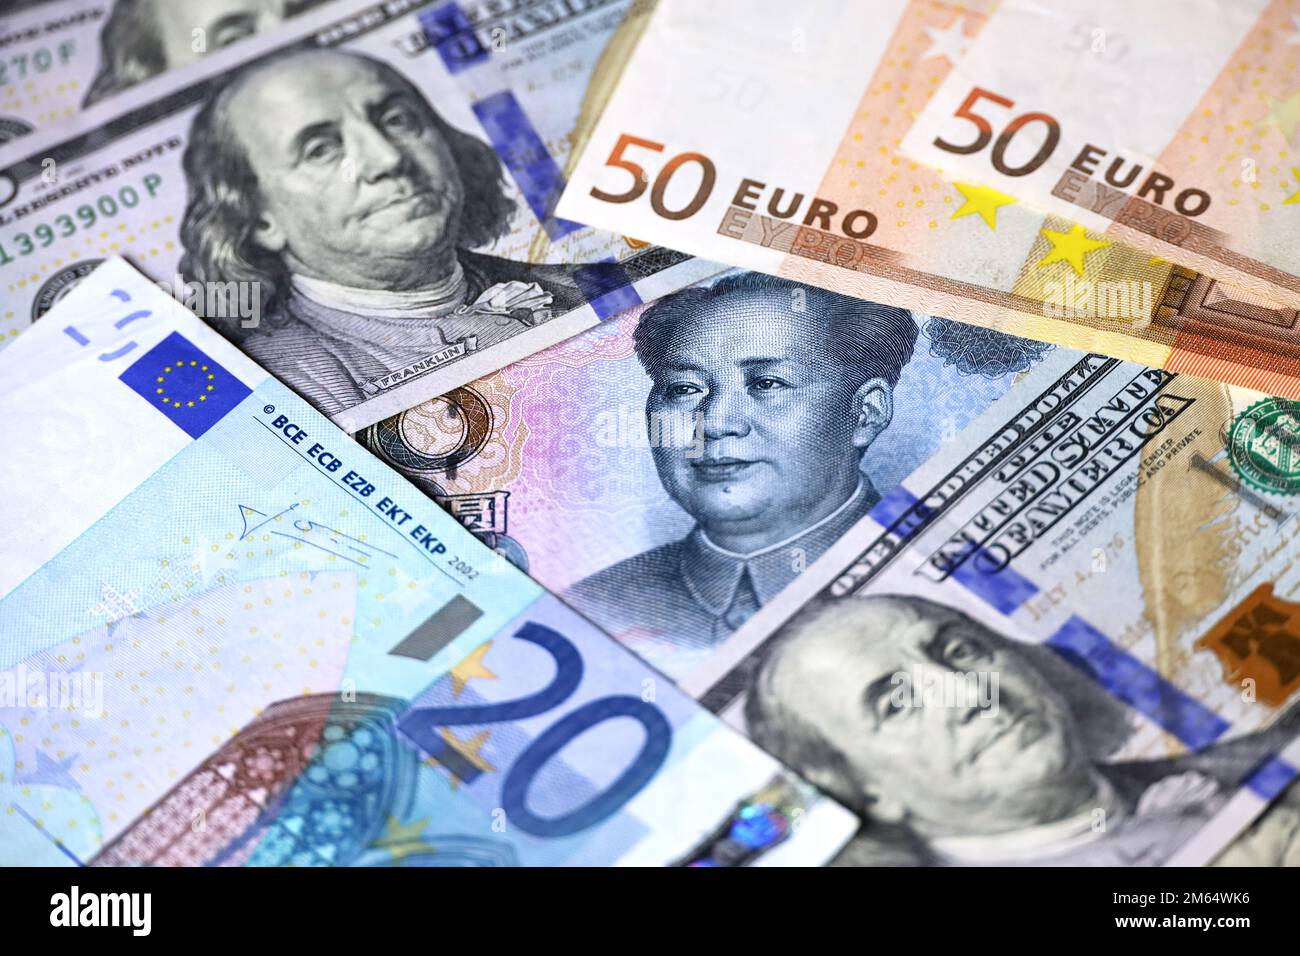 Yuan chinois entouré de dollars américains et de billets en euros. Concept de guerre commerciale entre la Chine et les États-Unis, taux de change, économie mondiale Banque D'Images